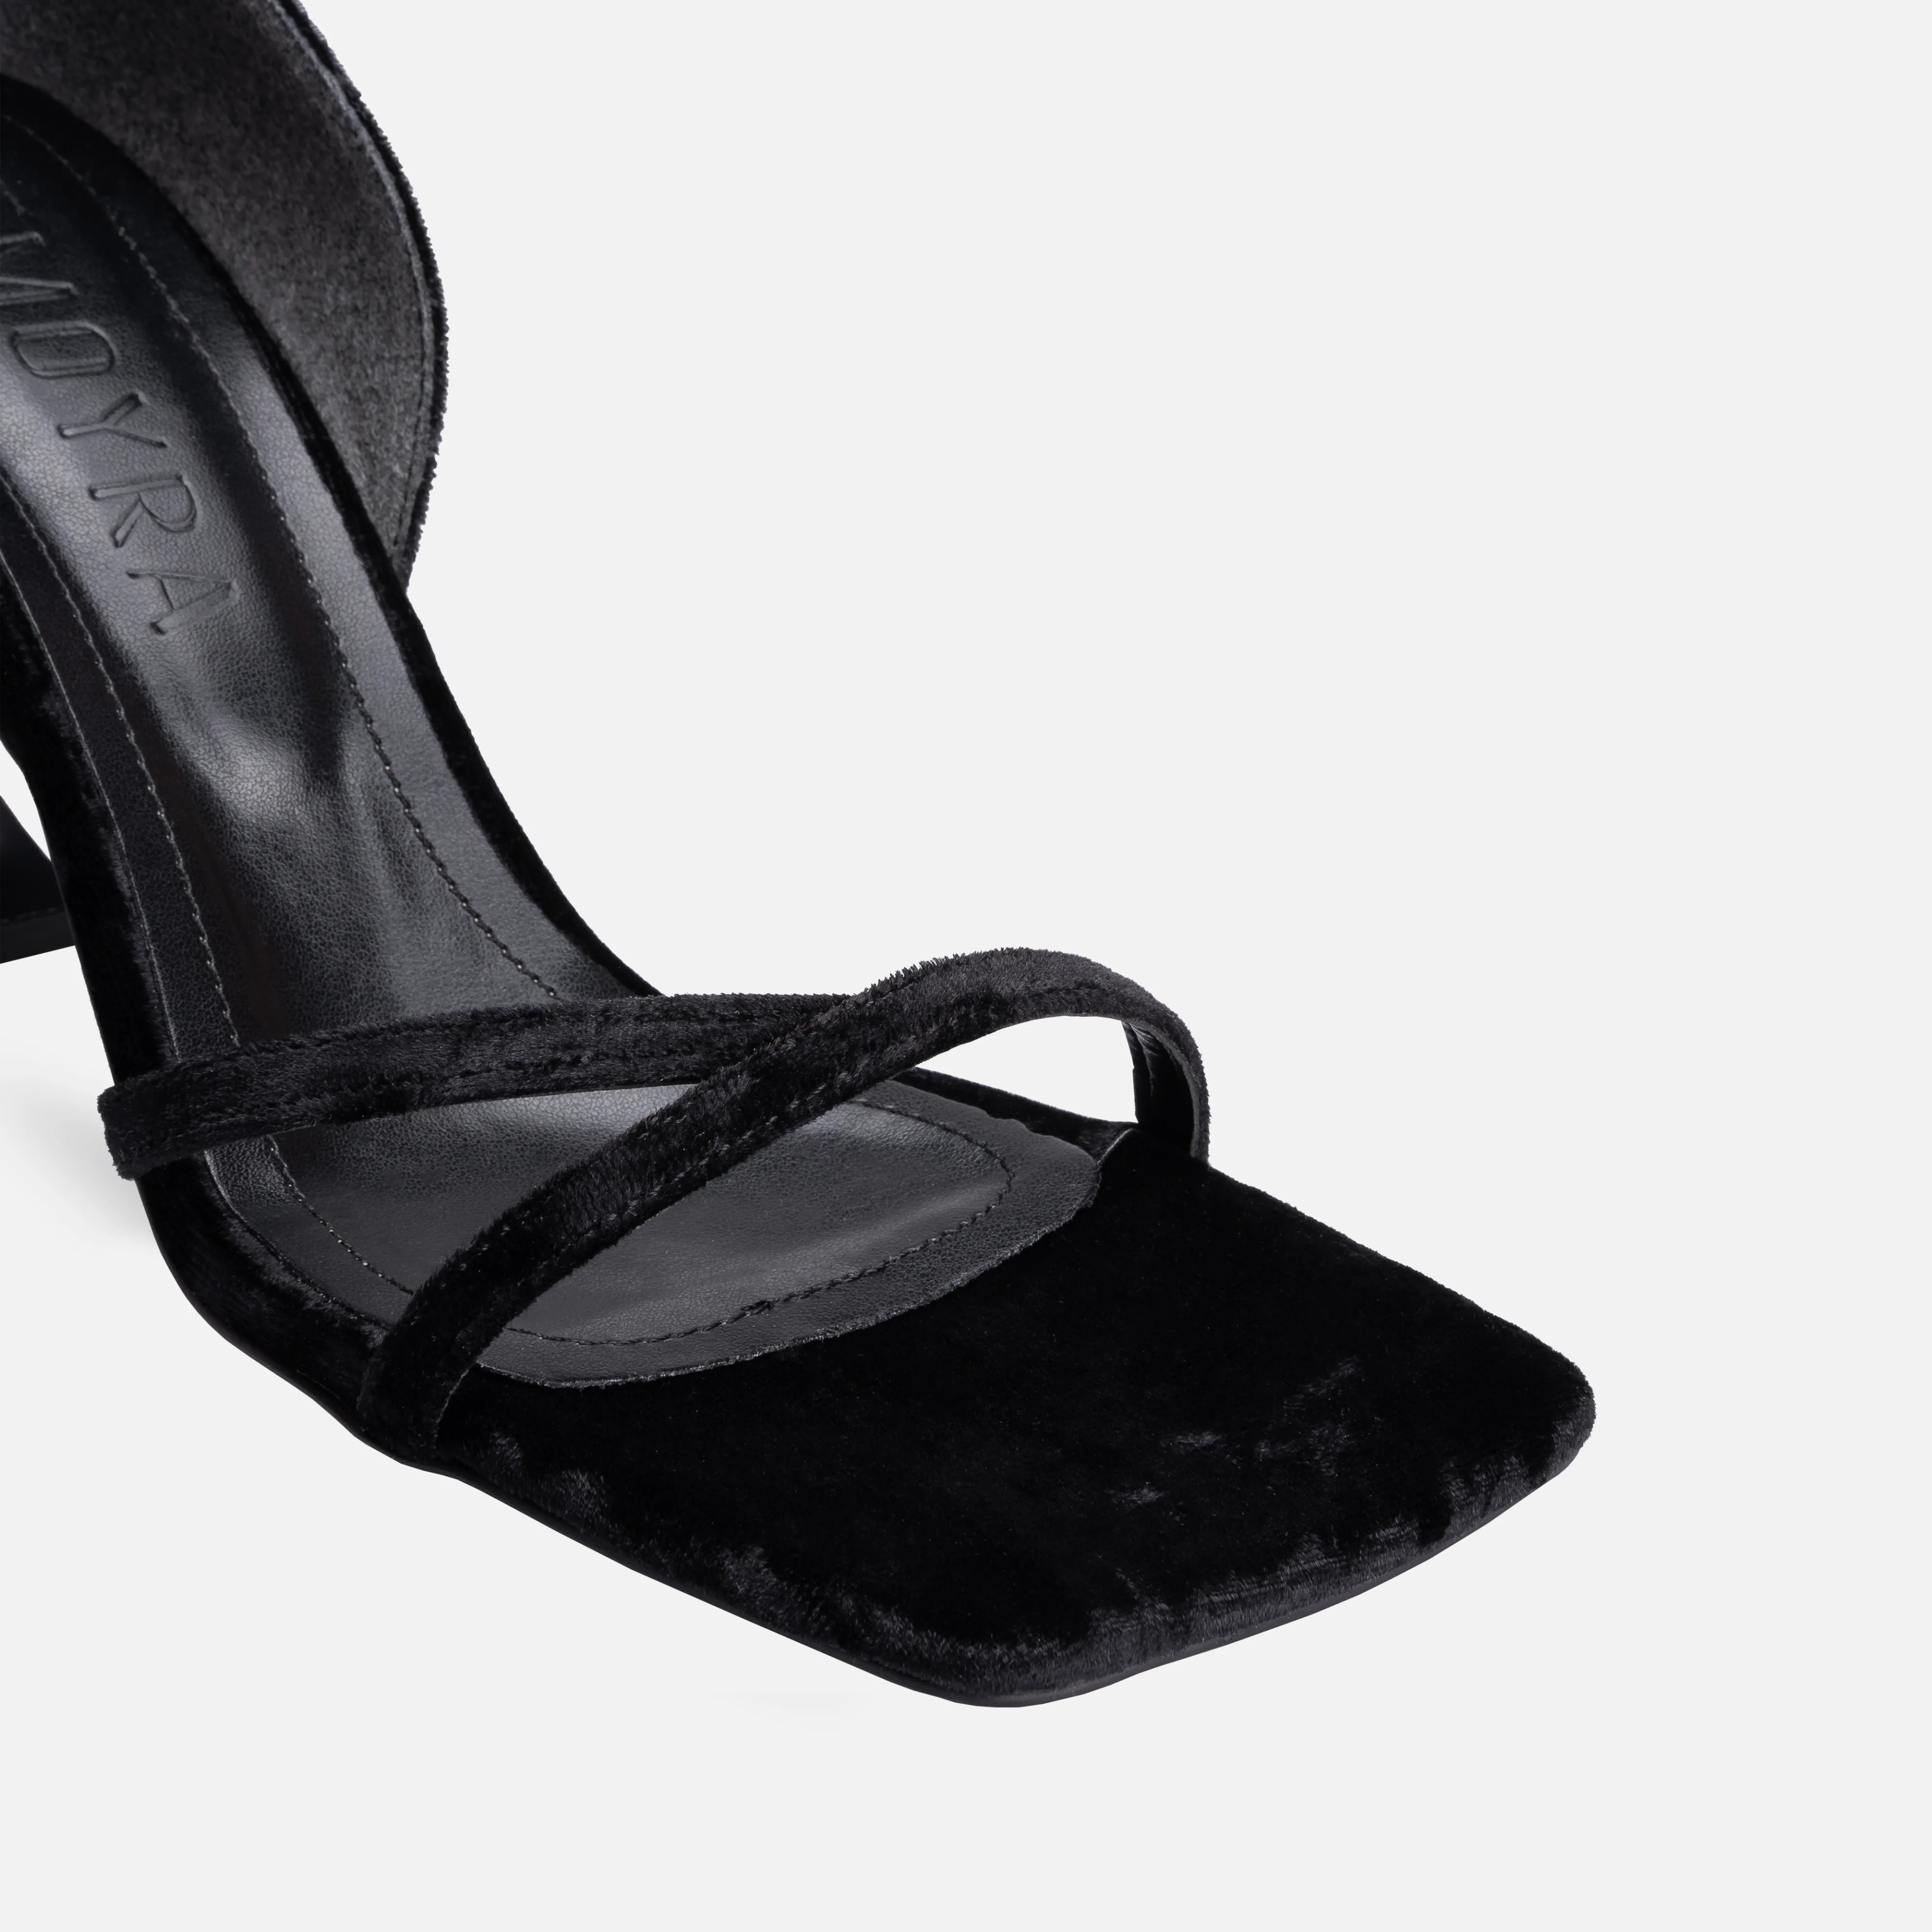 Velvet Thin High-Heeled Shoes - Black